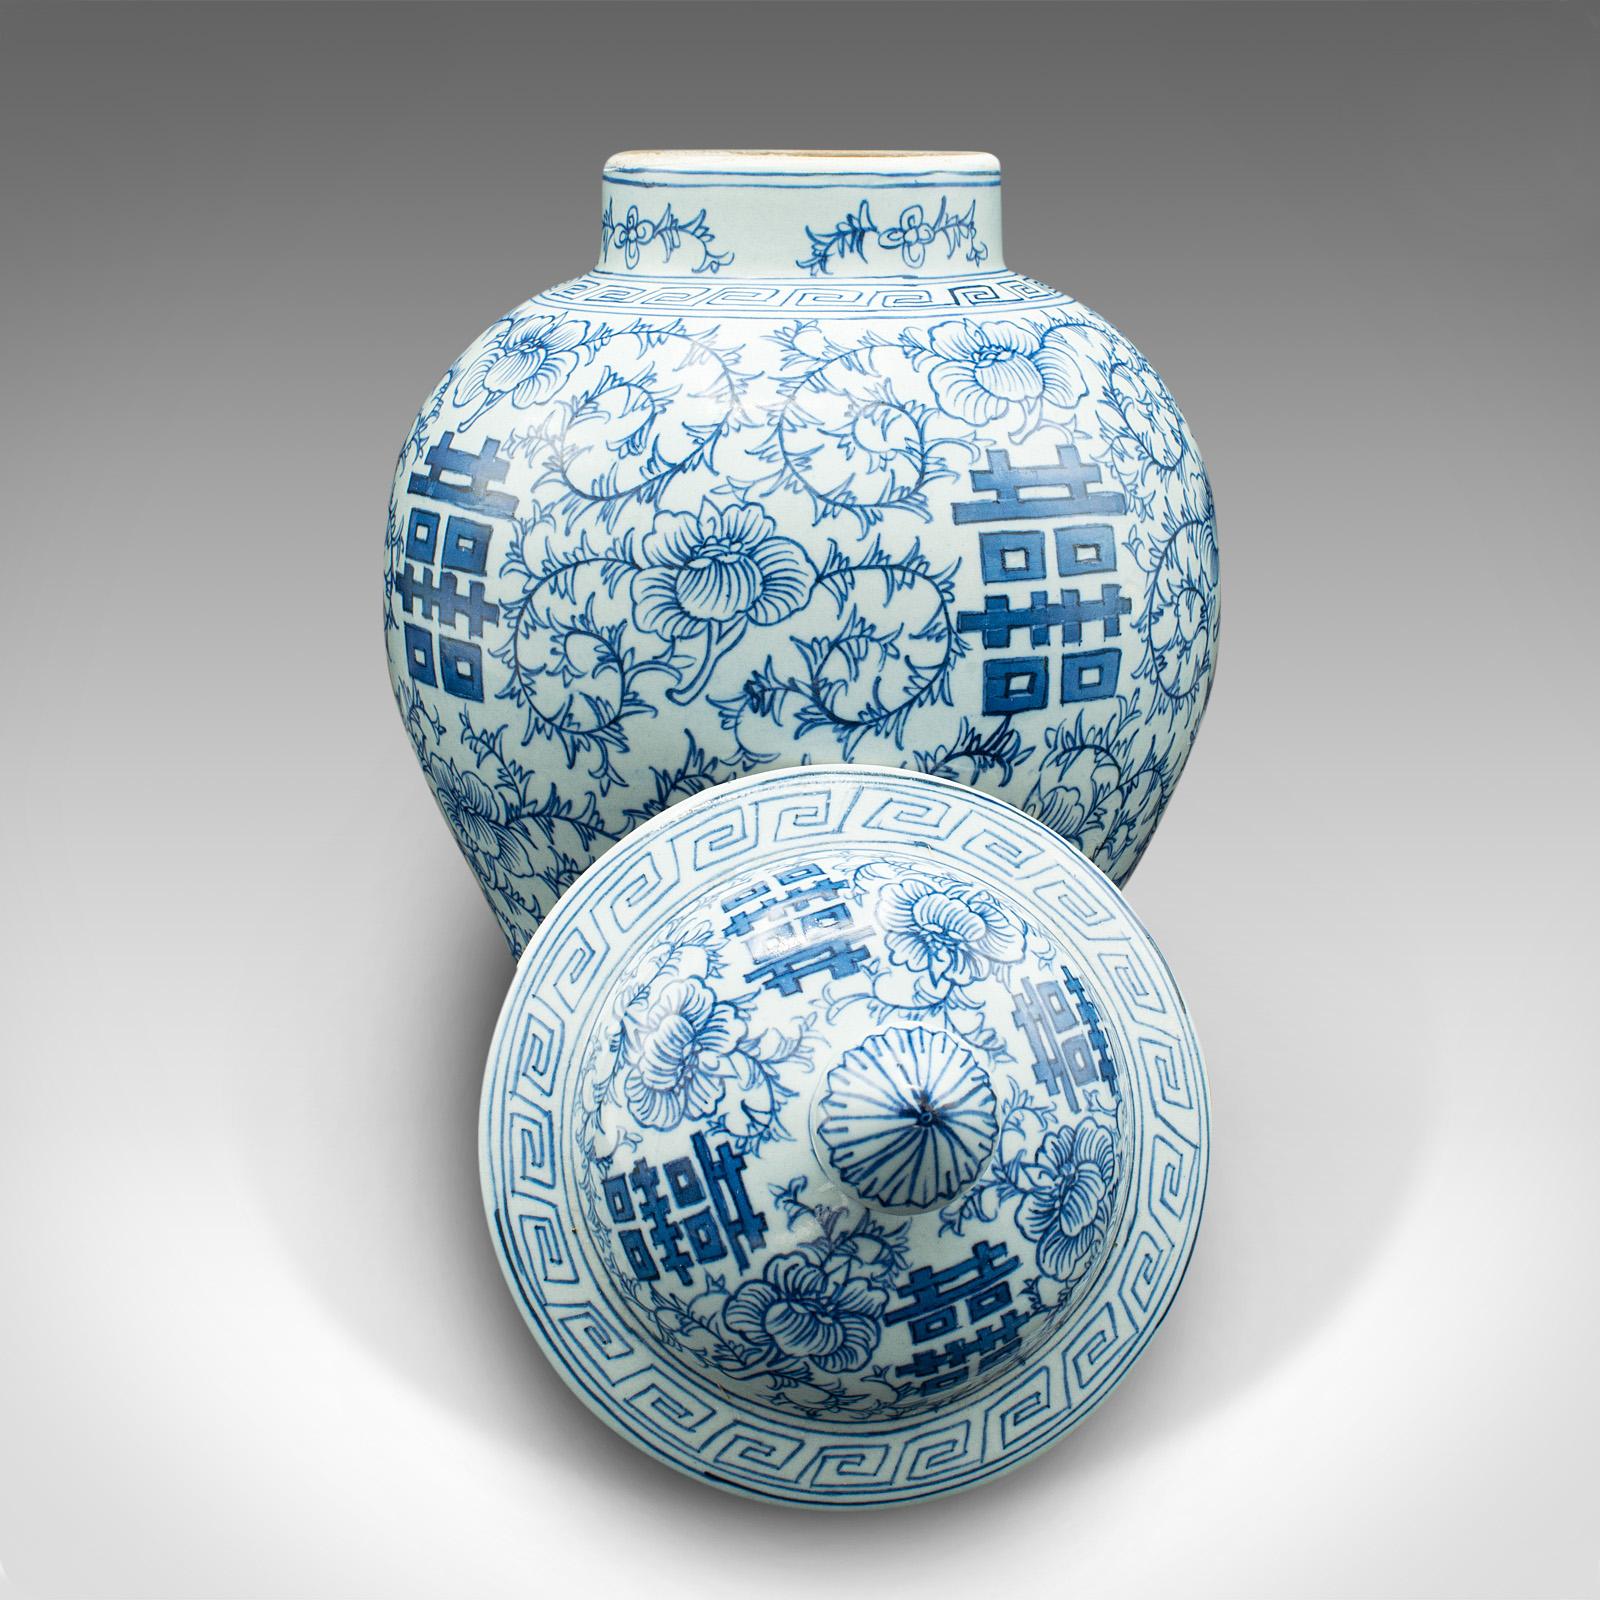 Il s'agit d'une urne décorative vintage en forme de balustre. Vase chinois à couvercle en céramique, datant de la période Art déco, vers 1930.

Urne merveilleusement substantielle, avec une finition décorative attrayante
Présente une patine d'usage